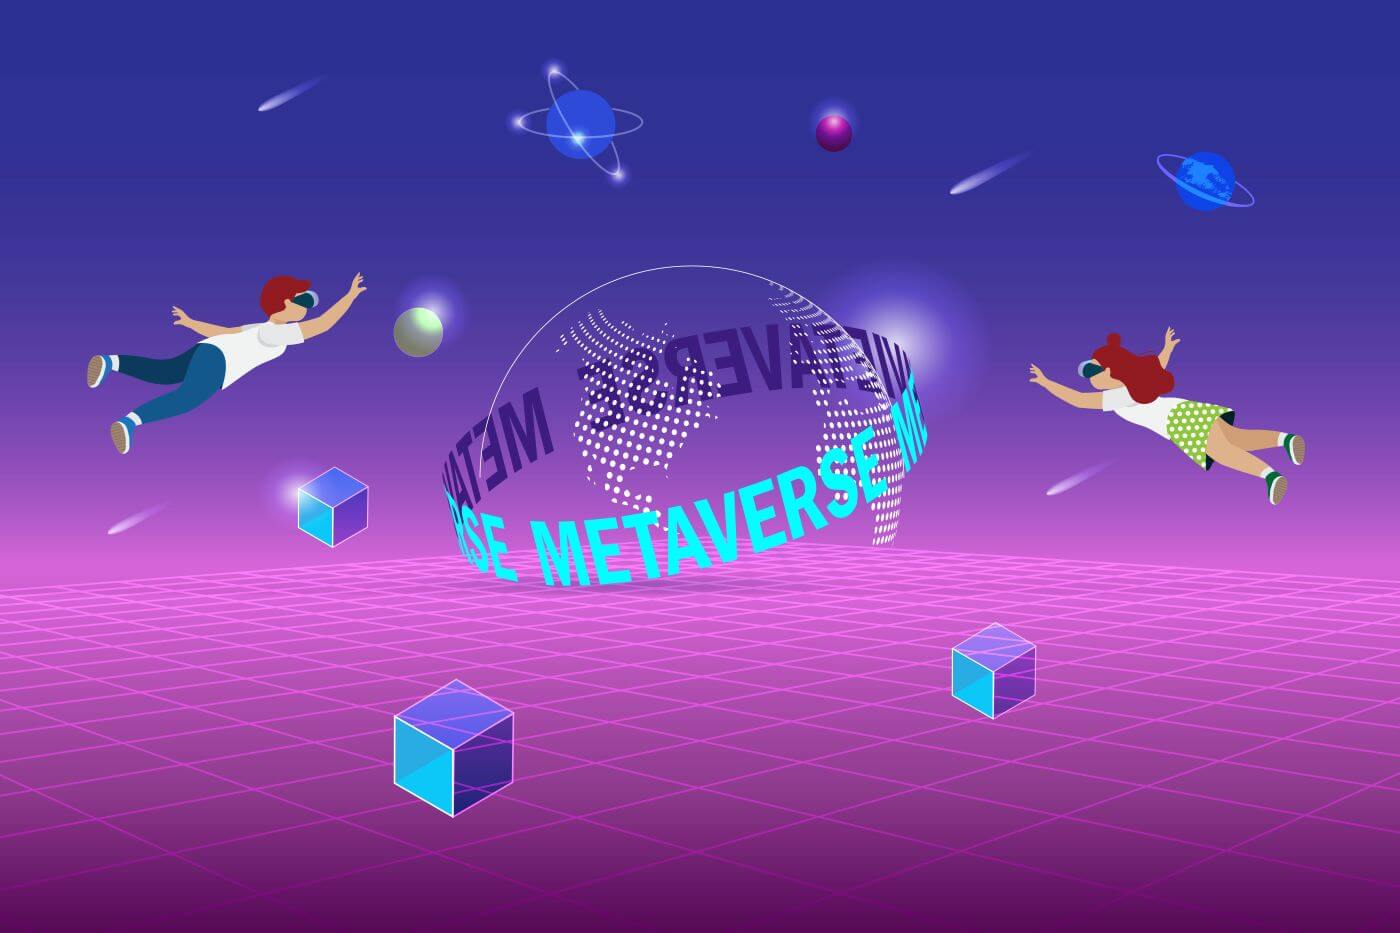 图片展示两个卡通人物在紫色渐变背景的虚拟空间中飘浮，周围有多个几何形状和“METAVERSE”字样的半球体。